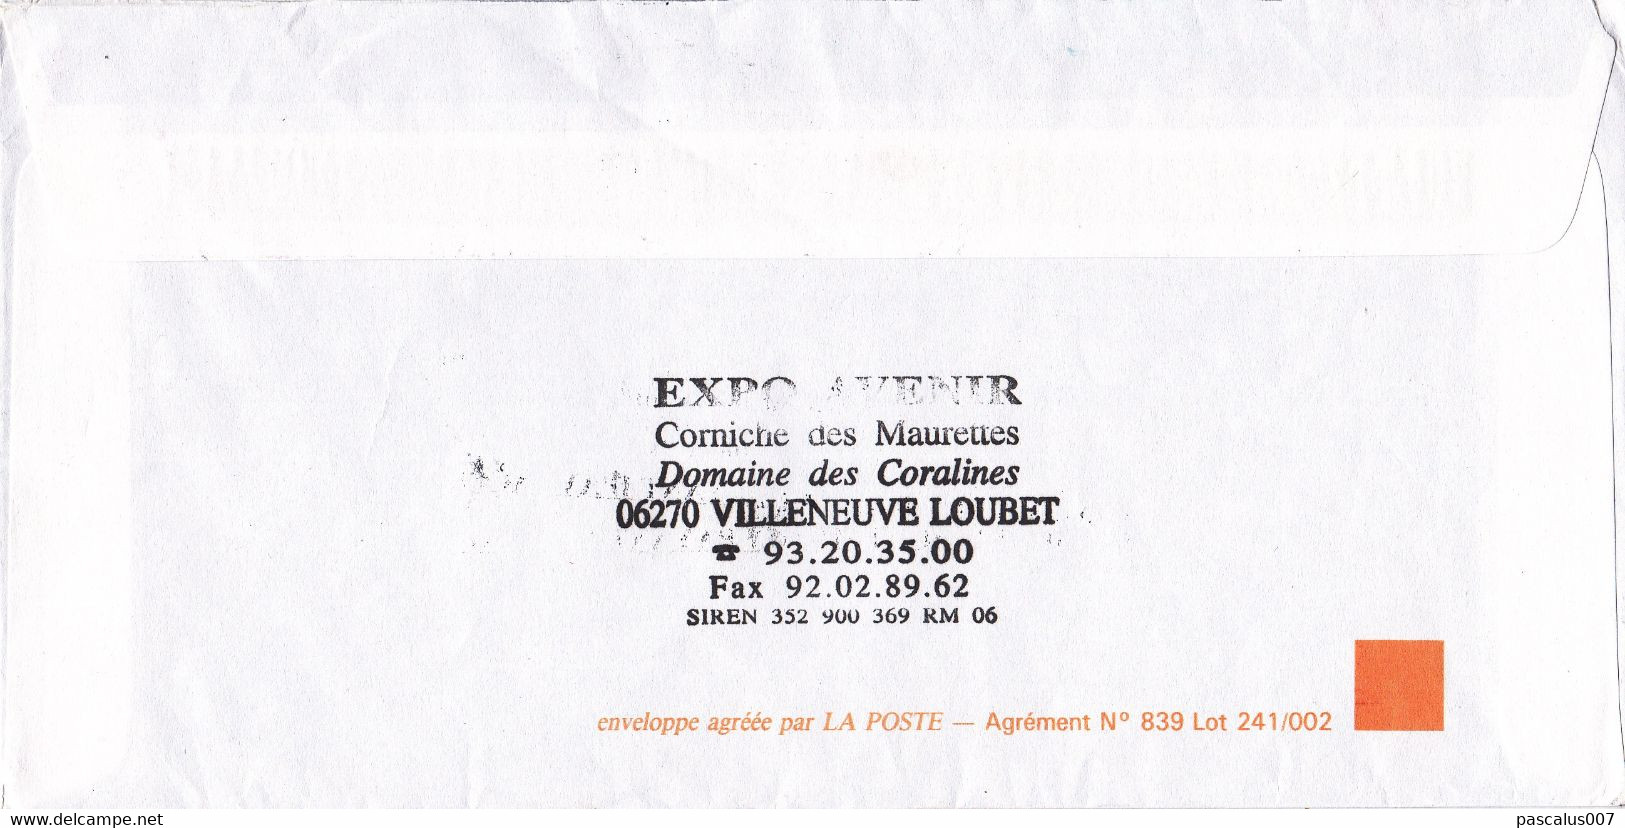 B01-373 5 enveloppes France 1995 Entiers Postaux Divers